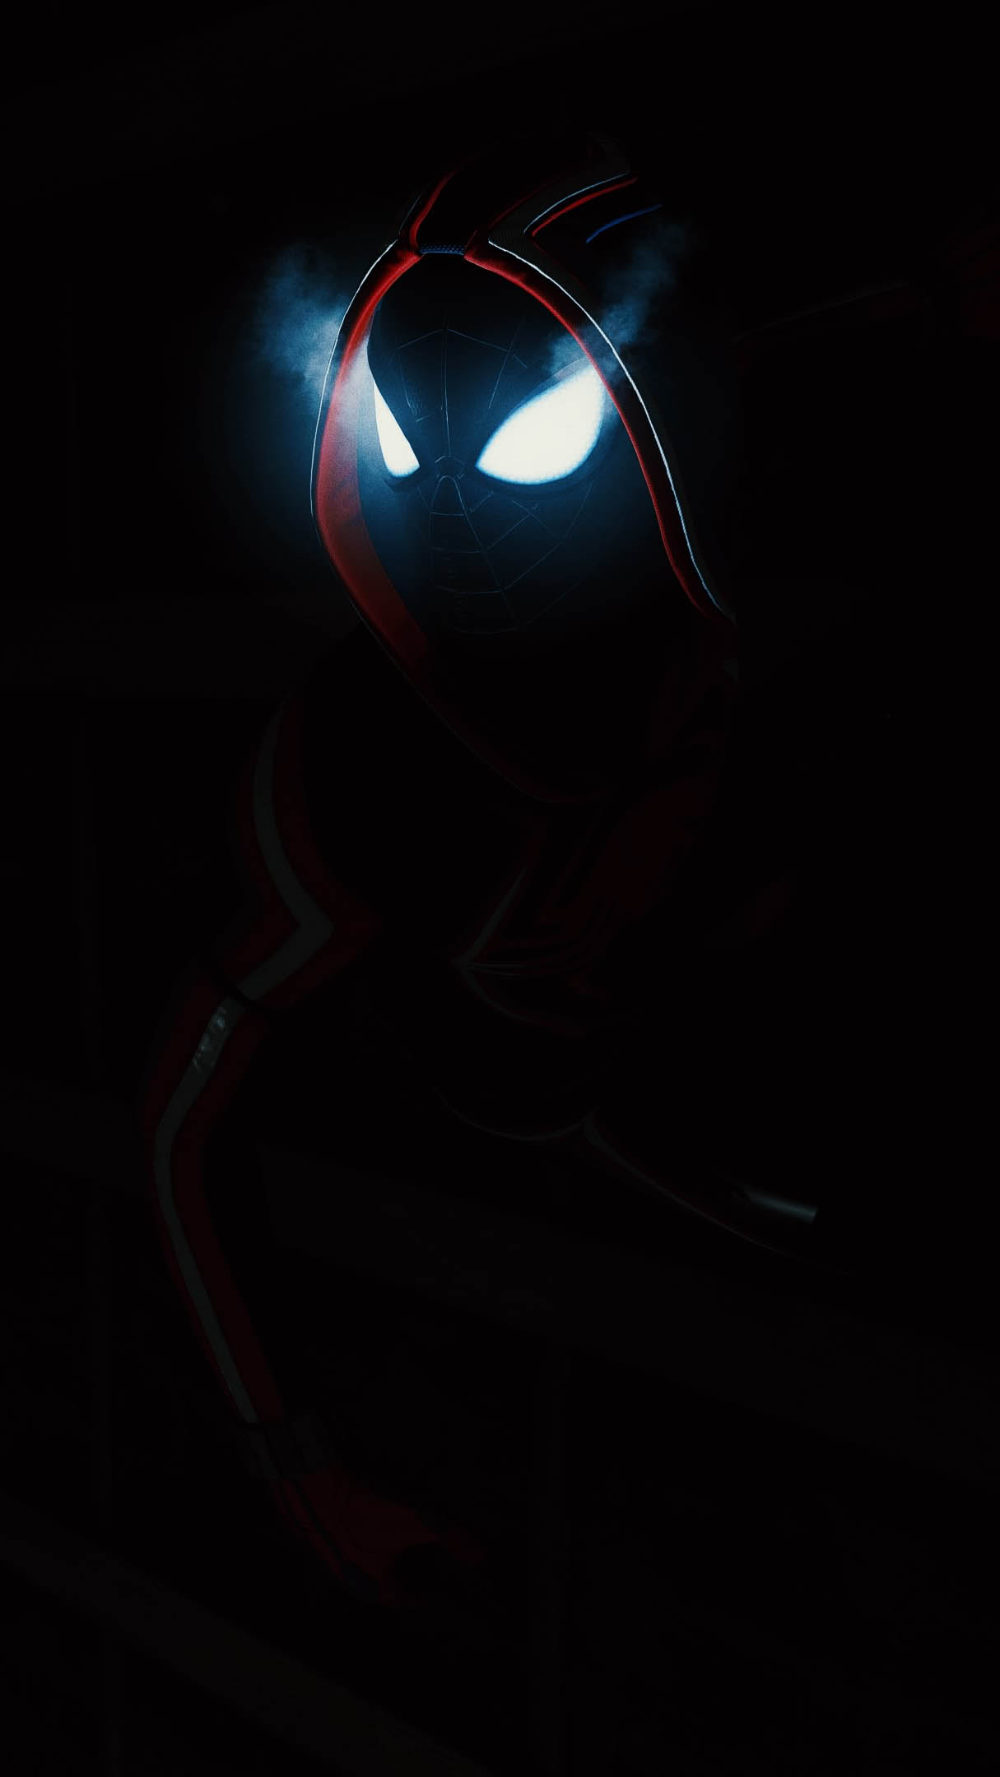 Dark Spider Man Wallpapers